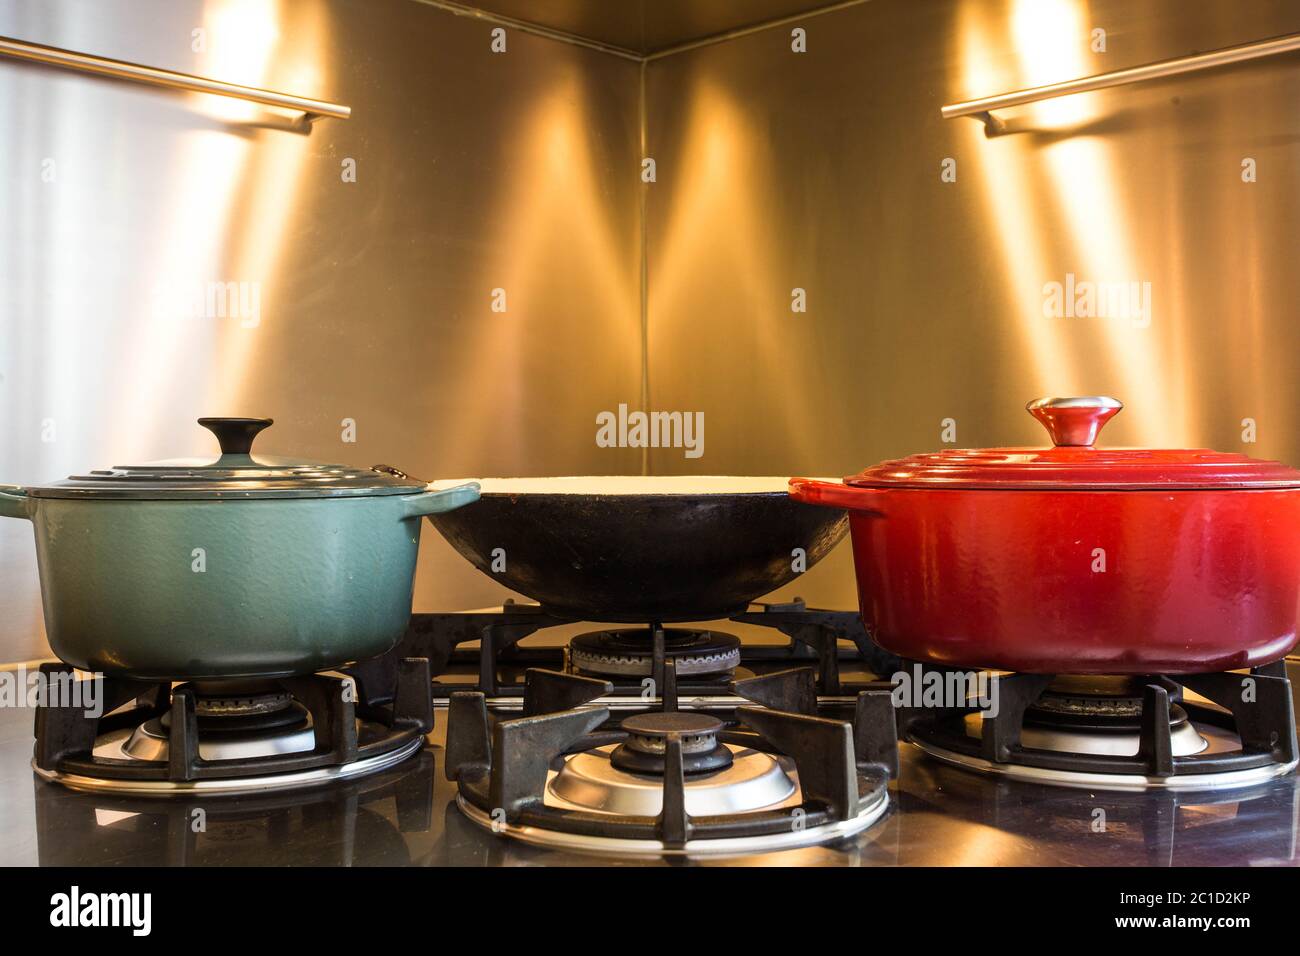 Cuisine élégante pour la cuisine d'atelier dans l'hôtel ont un équipement de luxe et une petite casserole sur le poêle à gaz qui a feu. Banque D'Images